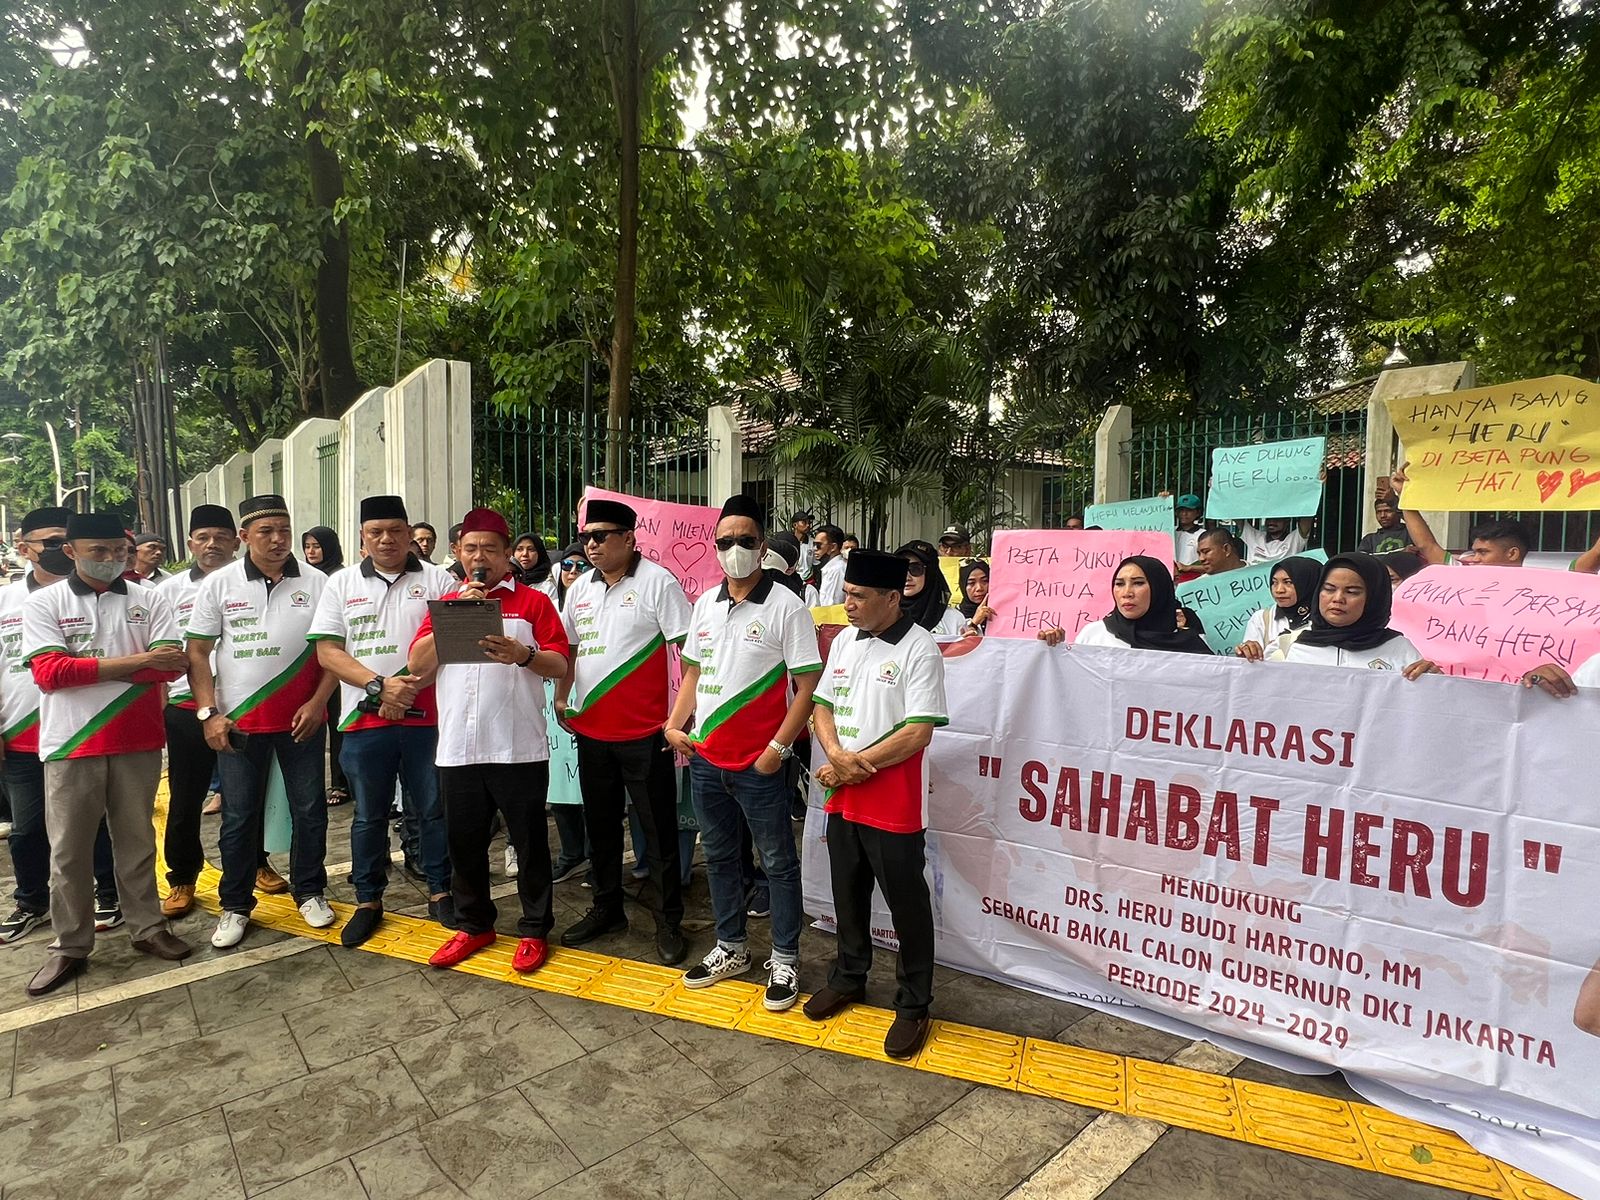 Dukung Pj Gubernur Nyalon Pilgub Jakarta, Umar Kei Bentuk Relawan Sahabat Heru